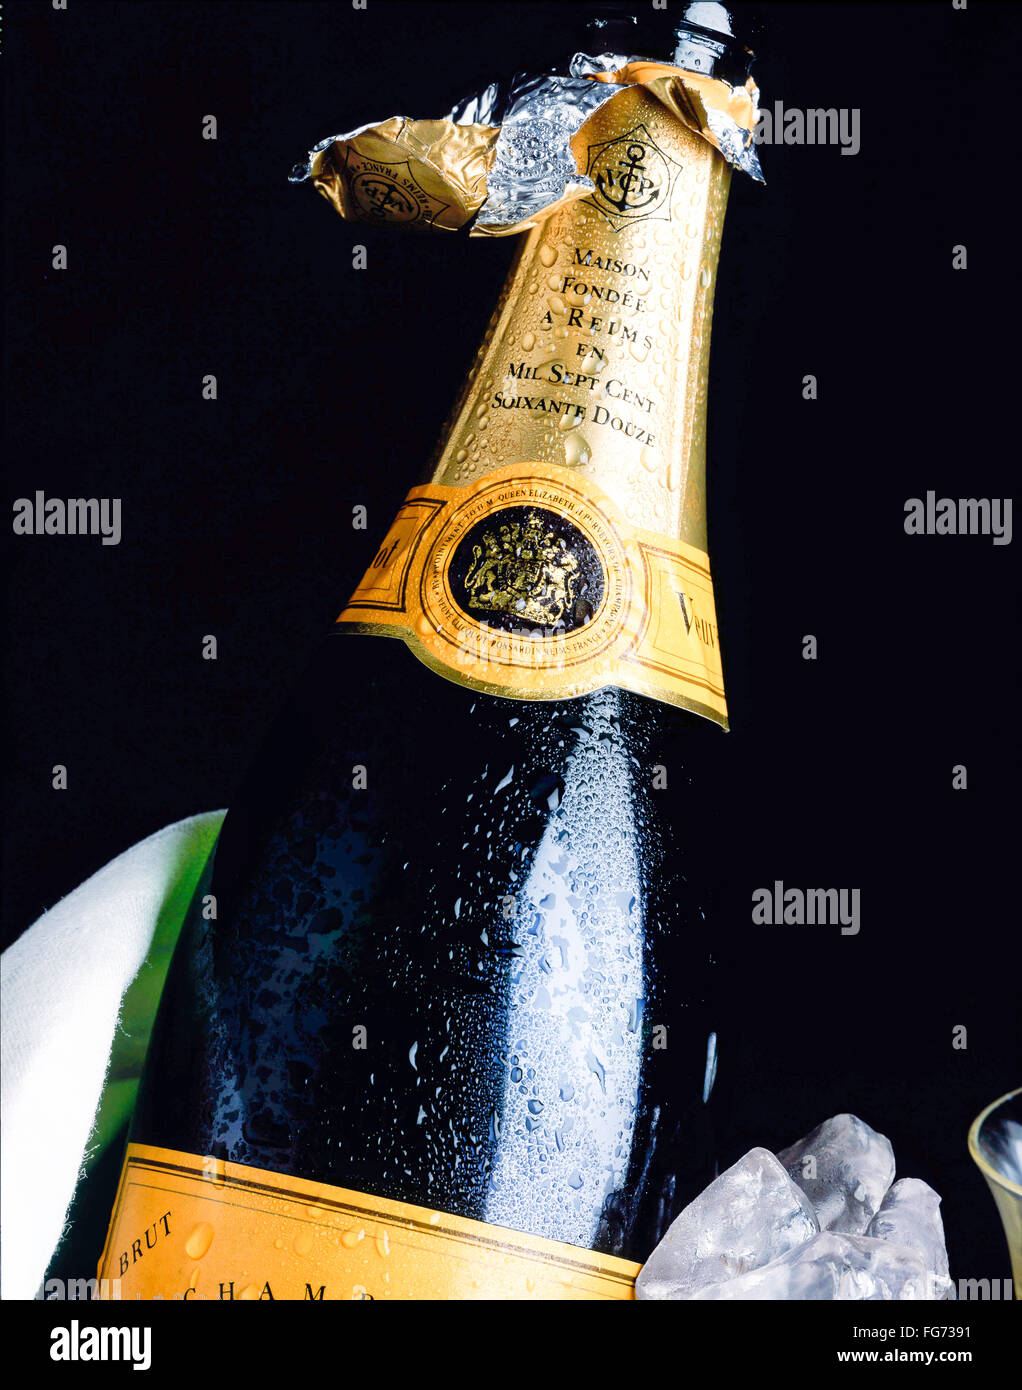 Geöffnete Flasche Veuve Clicquot Champagner im Eiskübel, London, England, Vereinigtes Königreich Stockfoto